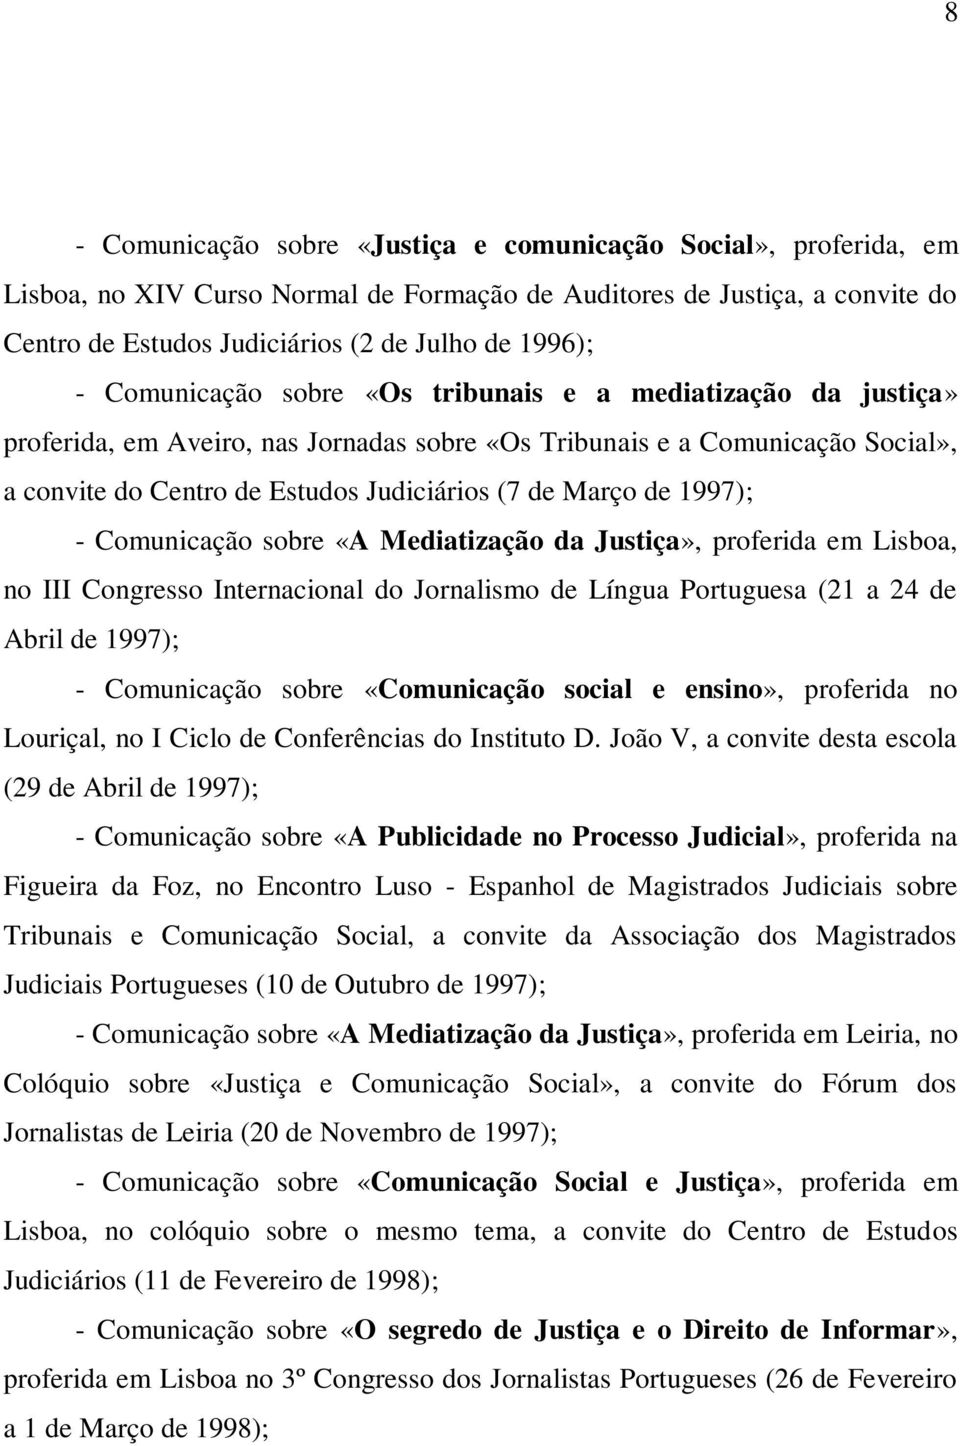 1997); - Comunicação sobre «A Mediatização da Justiça», proferida em Lisboa, no III Congresso Internacional do Jornalismo de Língua Portuguesa (21 a 24 de Abril de 1997); - Comunicação sobre